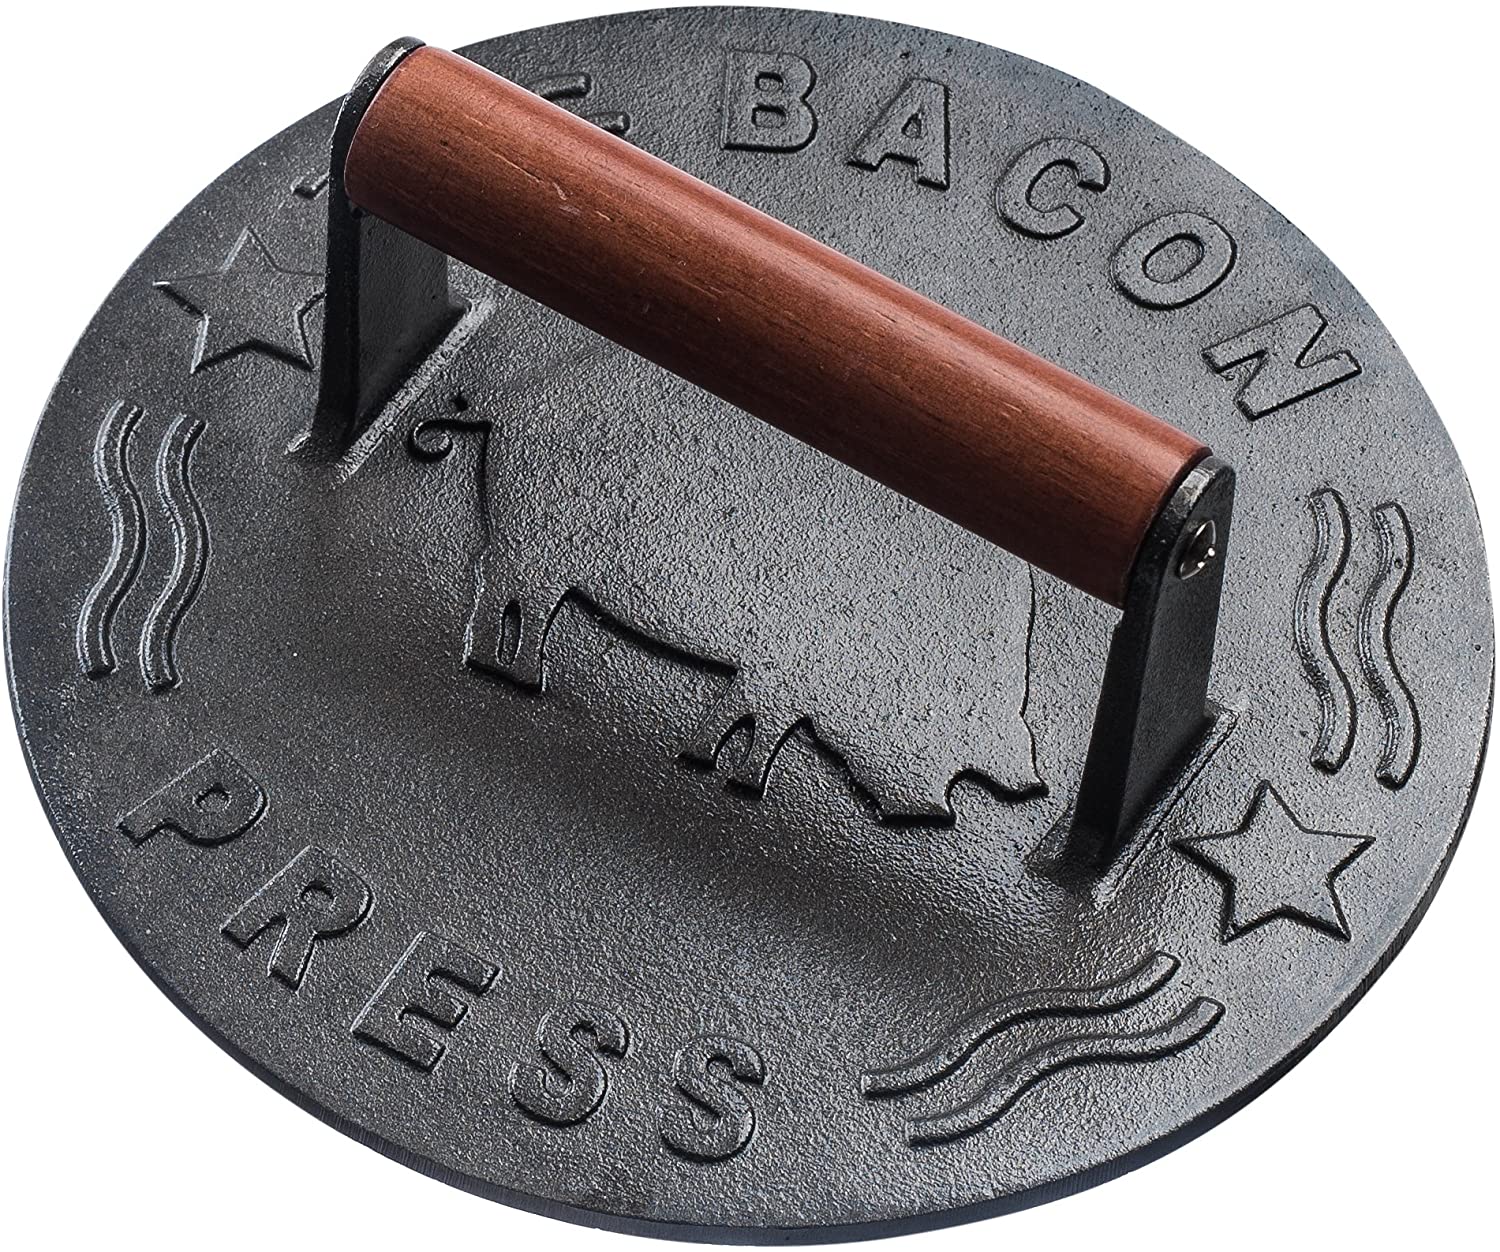 bacon press